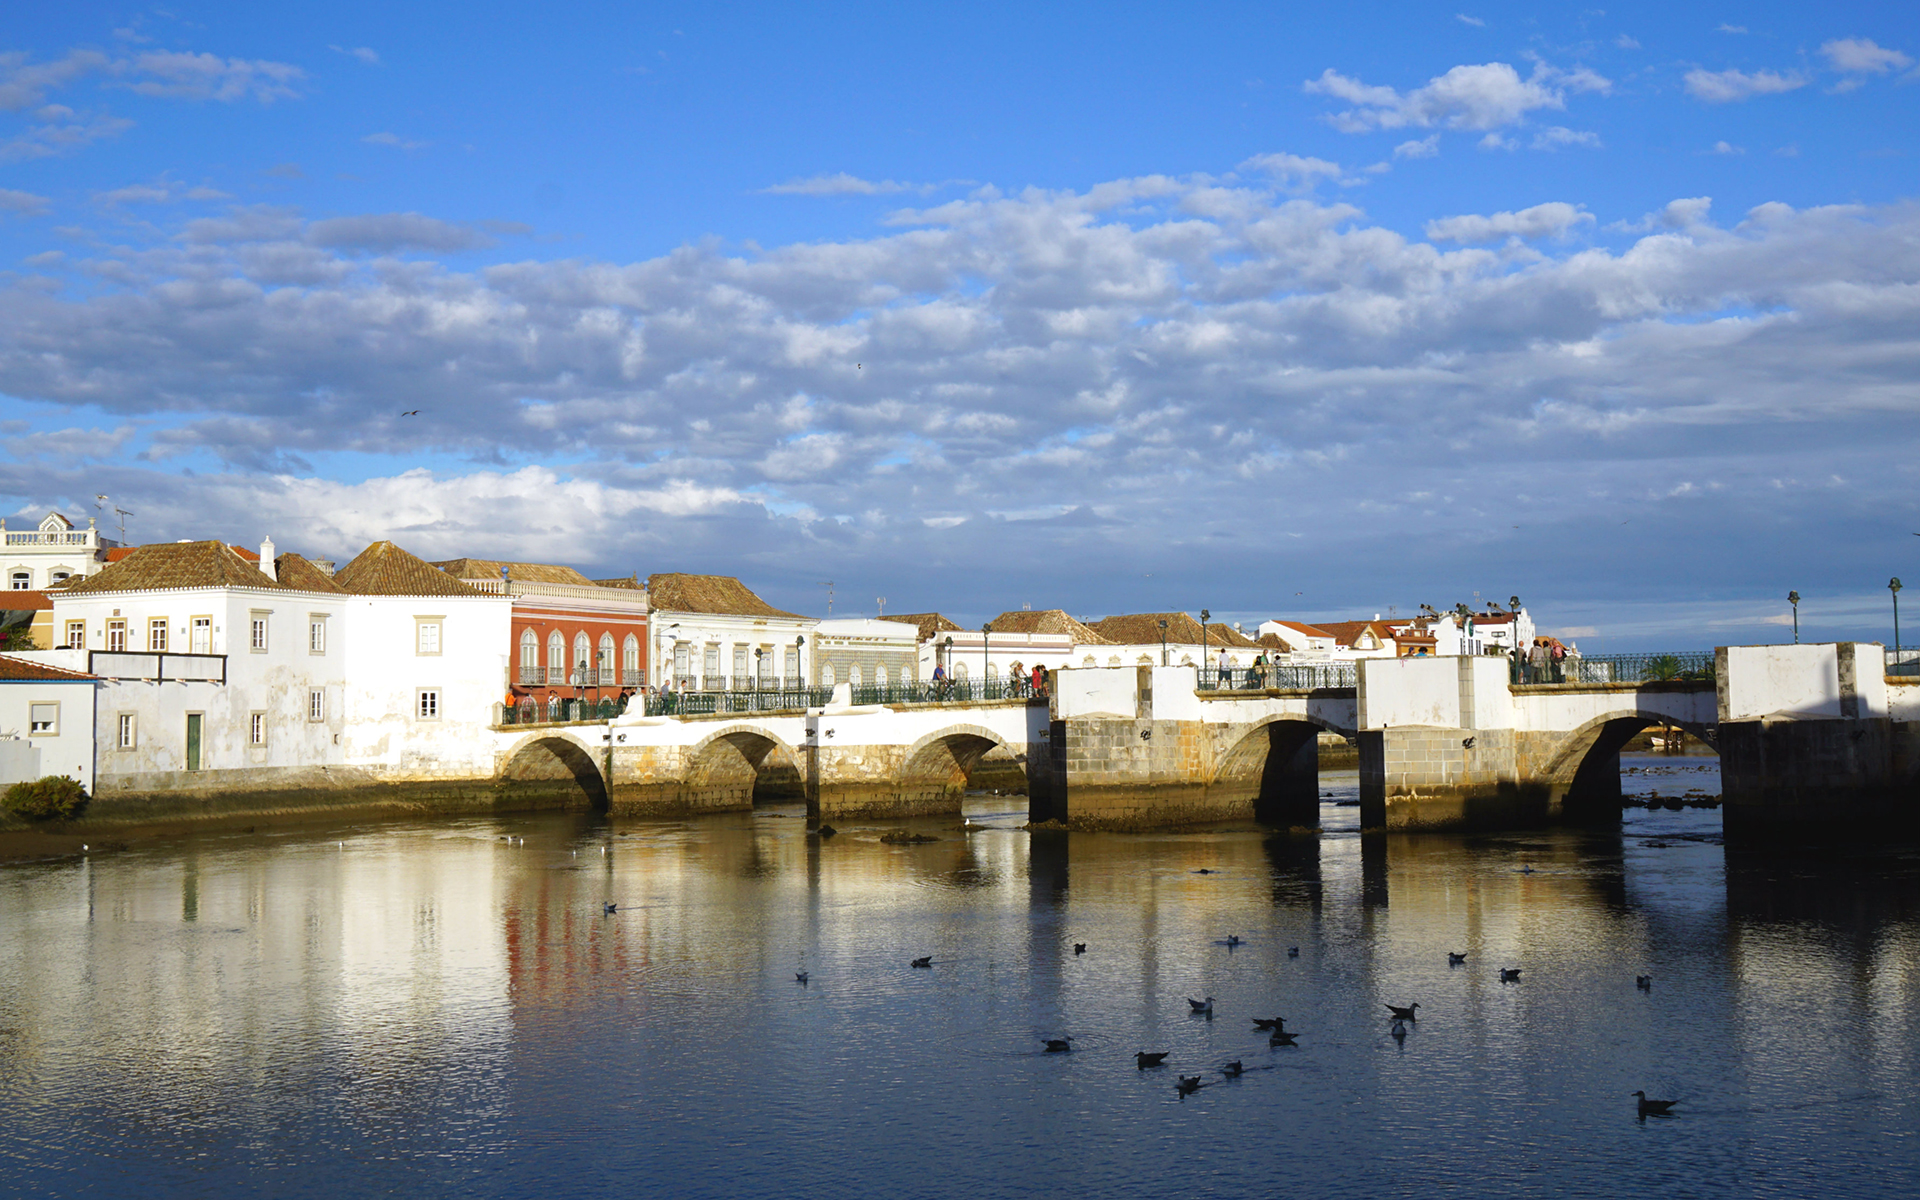 Die portugiesische Stadt Tavira mit ihrer markanten Brücke im Stadtkern verzaubert ihre Besucher auch im Winter.